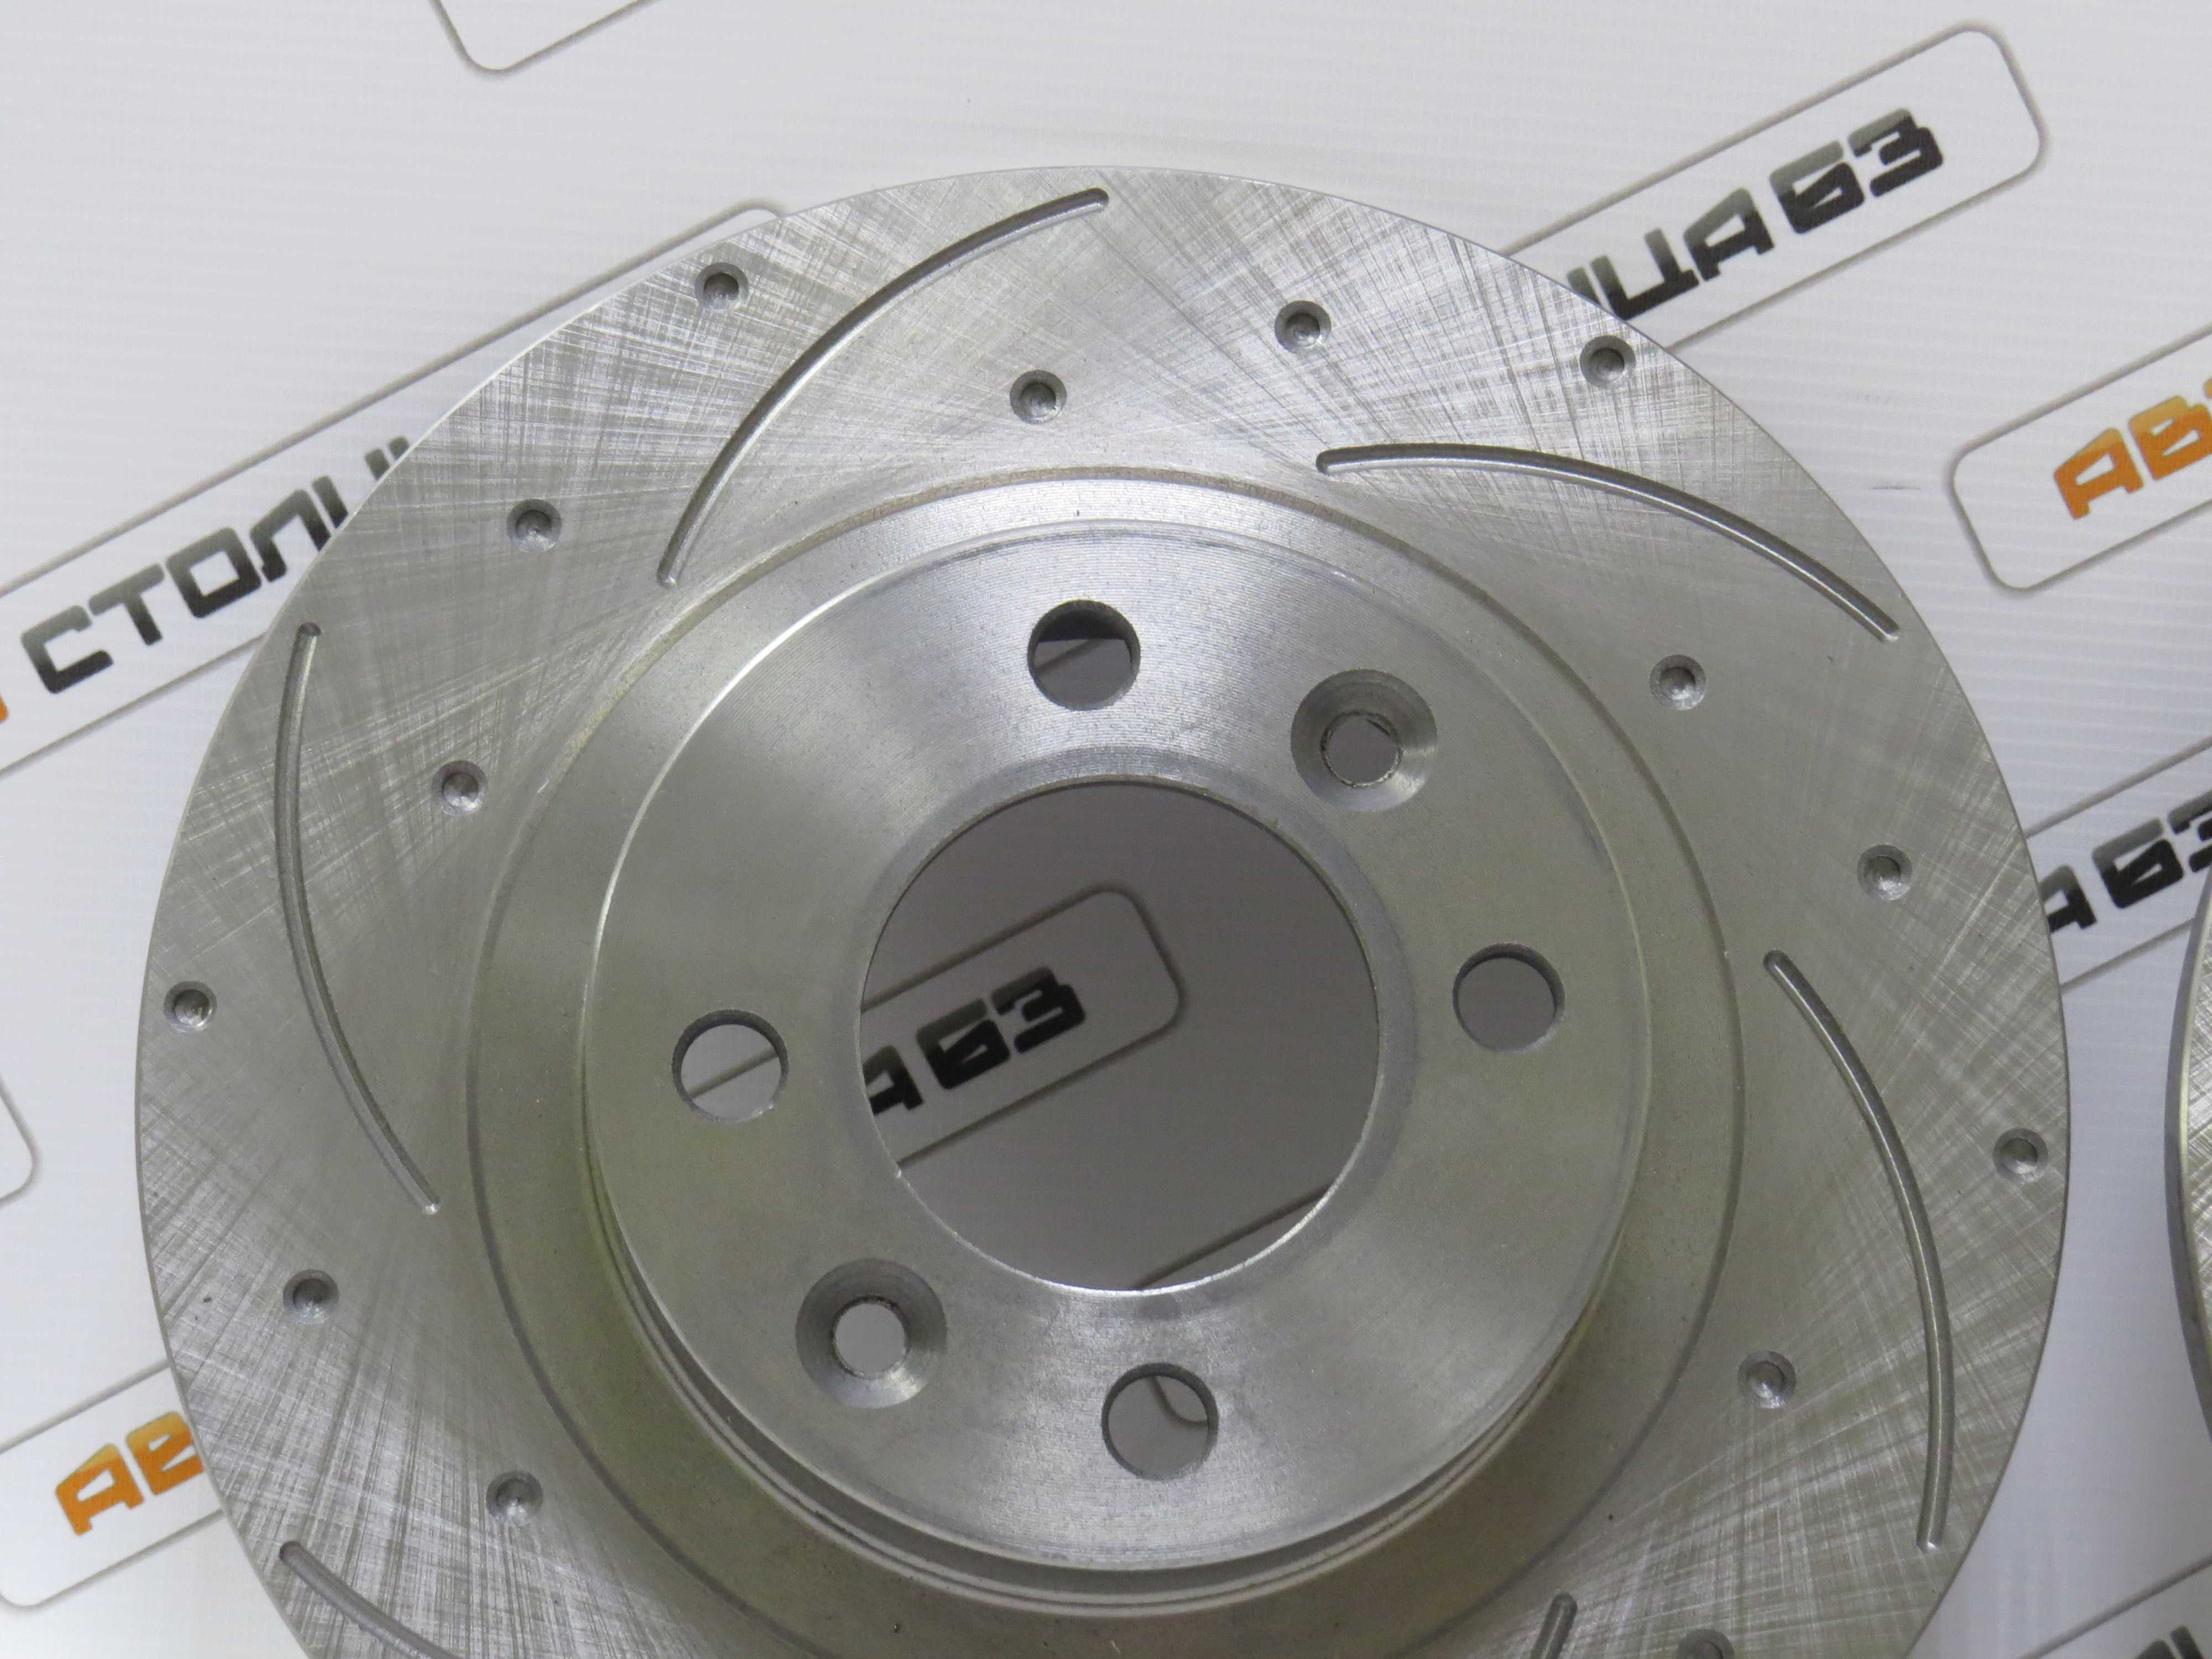 Лада ларгус передние тормозные диски 8 кл и 16 клапанов — замена, артикул, видео